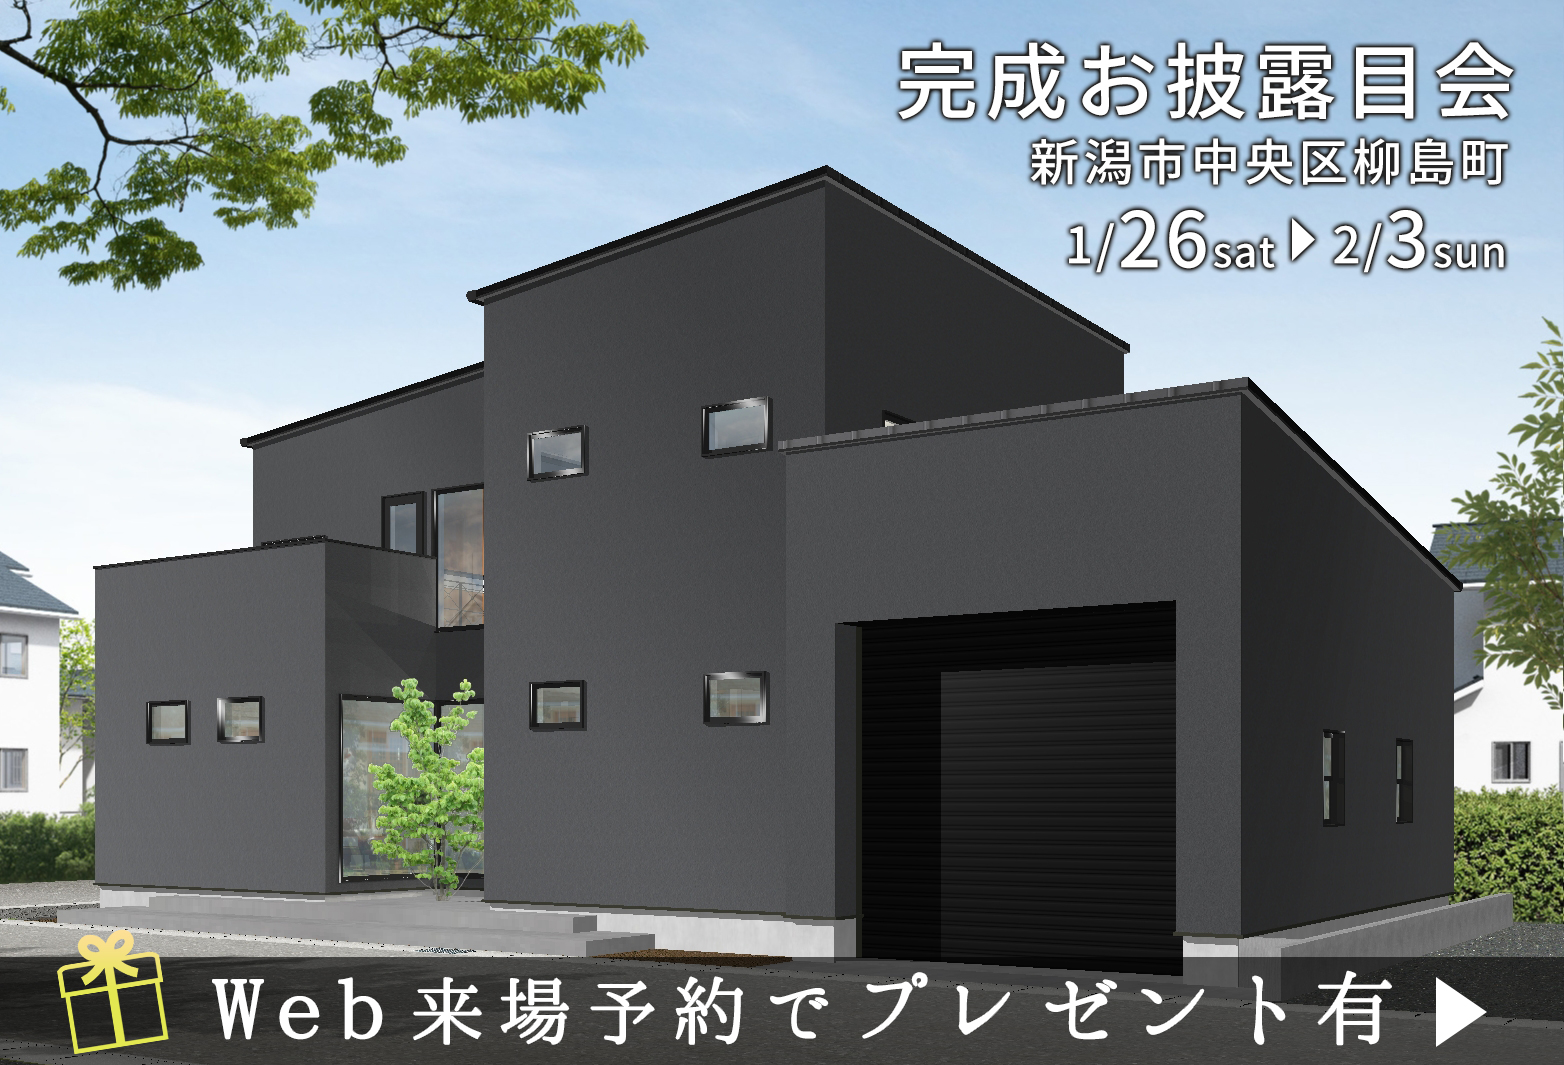 終了しました【1/26sat – 2/3sun】新潟市中央区で新築完成お披露目会を開催します